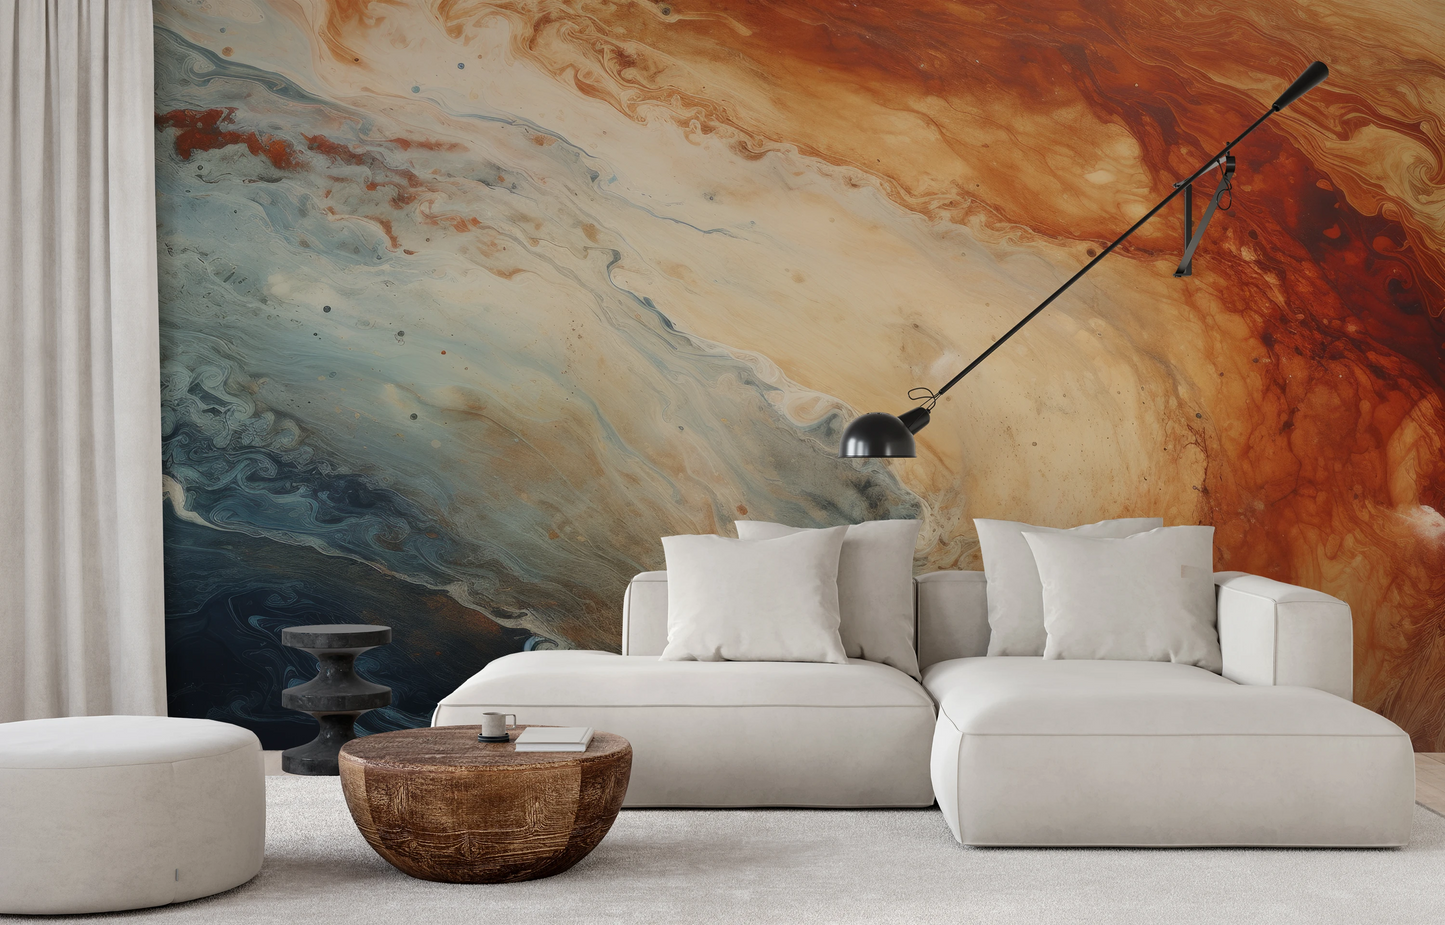 Wzór fototapety malowanej o nazwie Jupiter's Storm #2 pokazanej w aranżacji wnętrza.